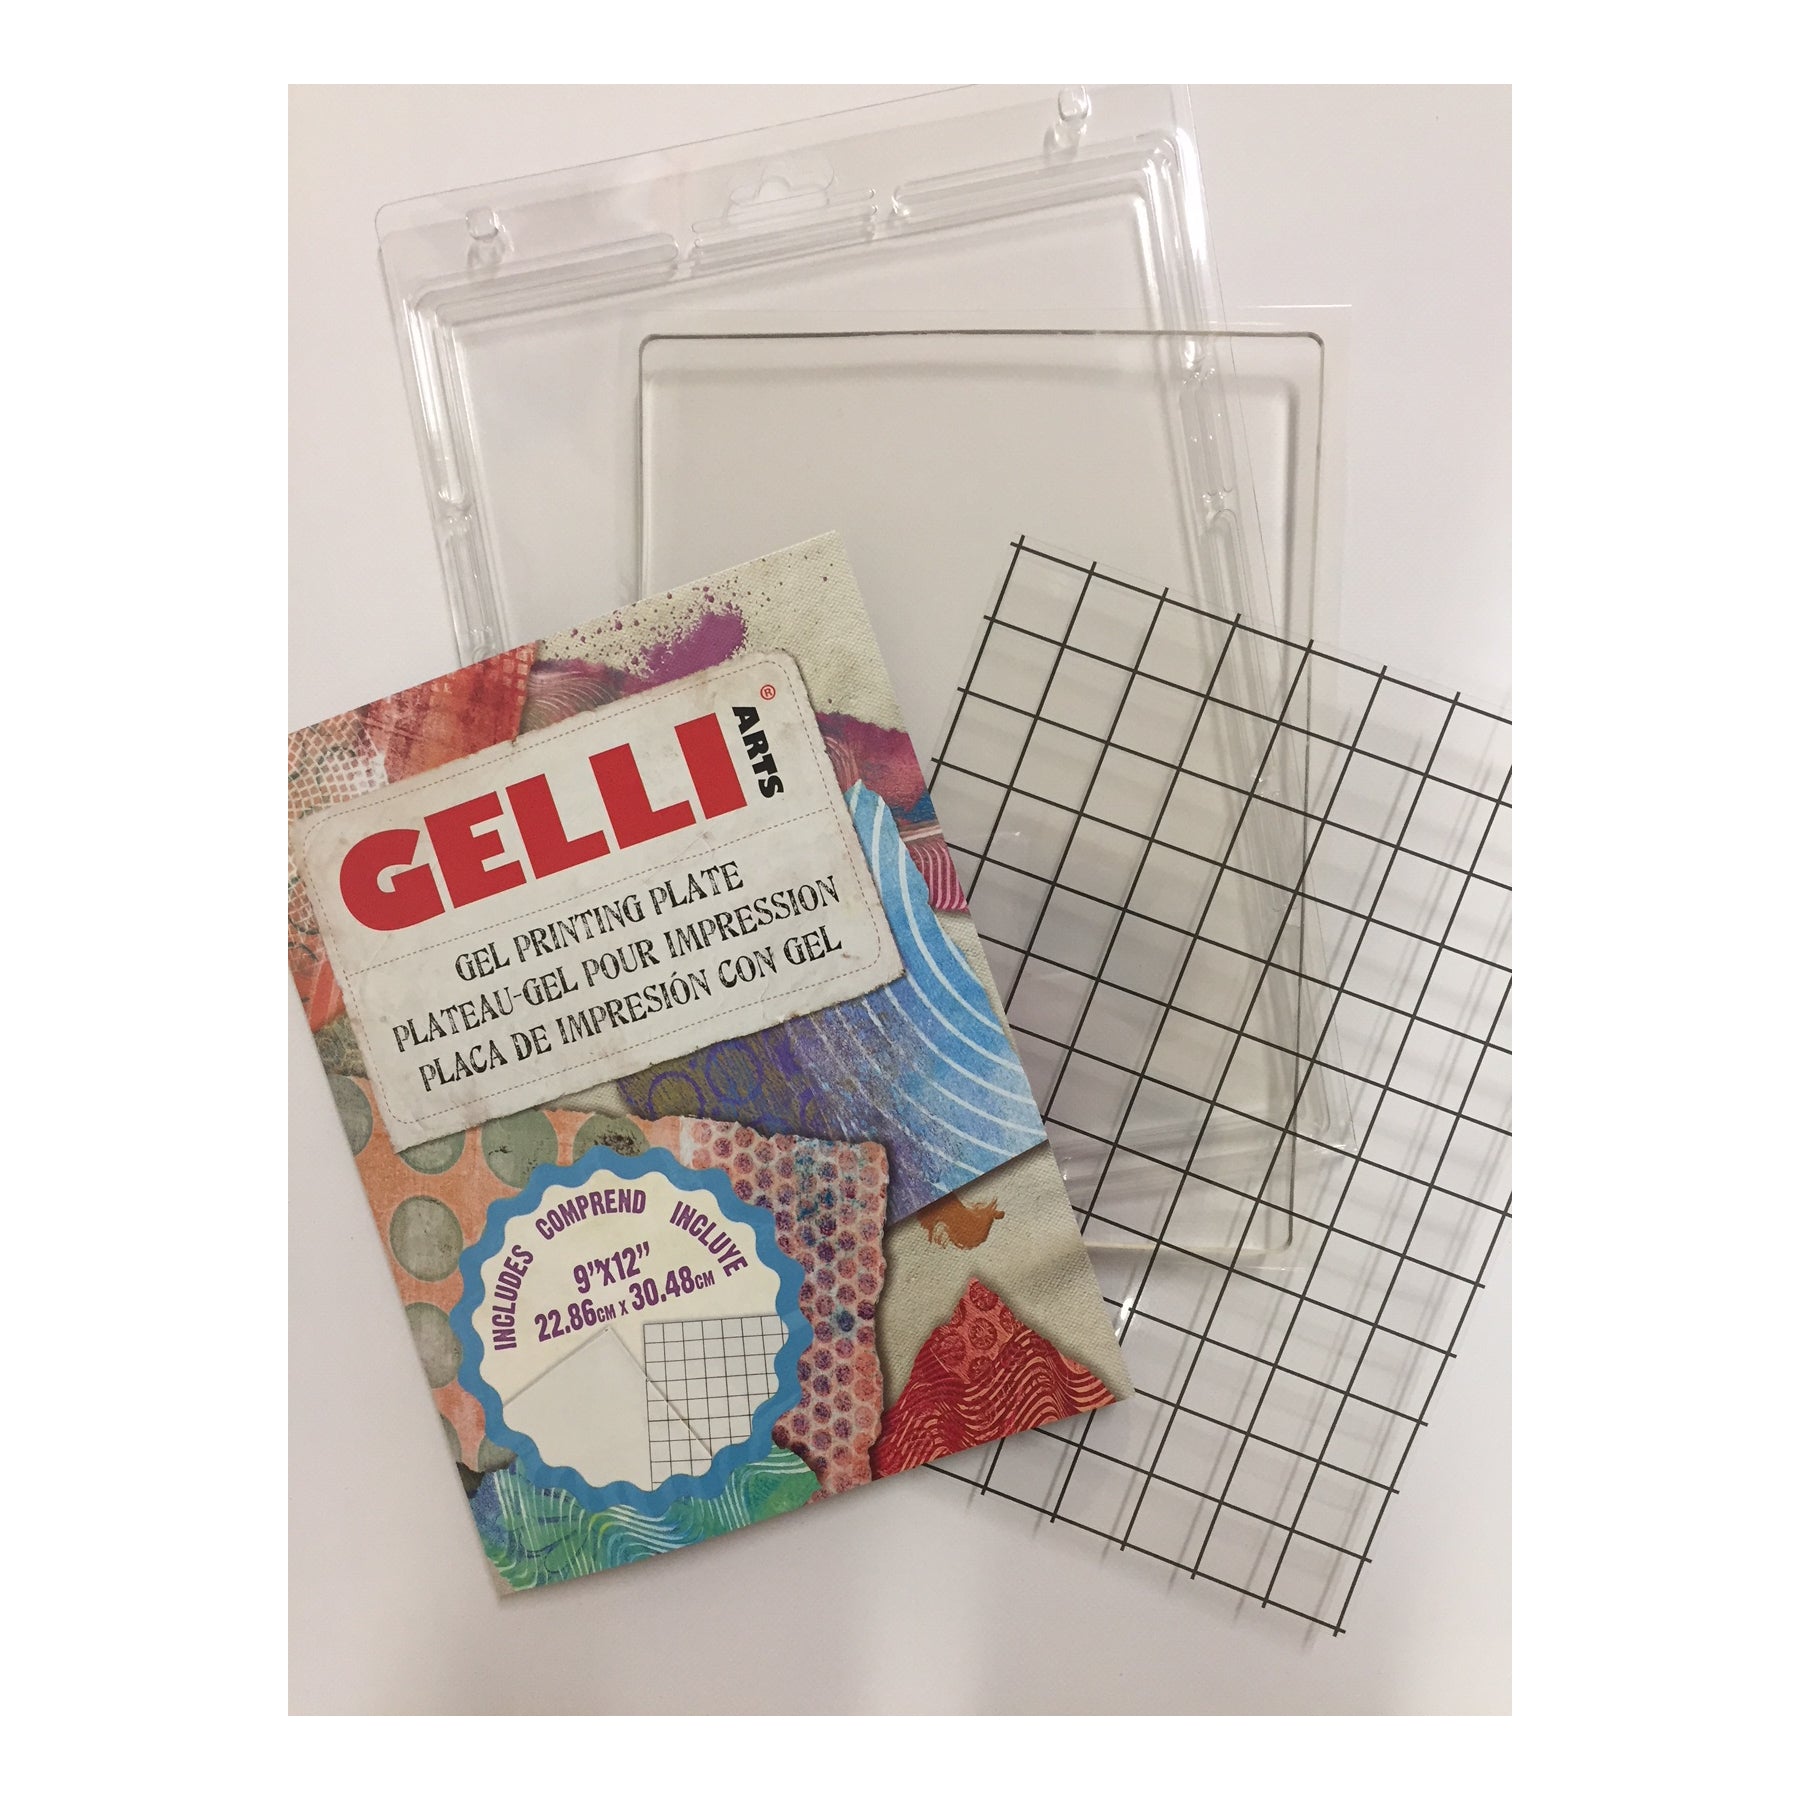 Gelli Arts Gel Printing Plate - 9 X 12 Gel Plate, Reusable Gel Printing  Plate, Printmaking Gelli Plate for Art, Clear Gel Monoprinting Plate, Gel